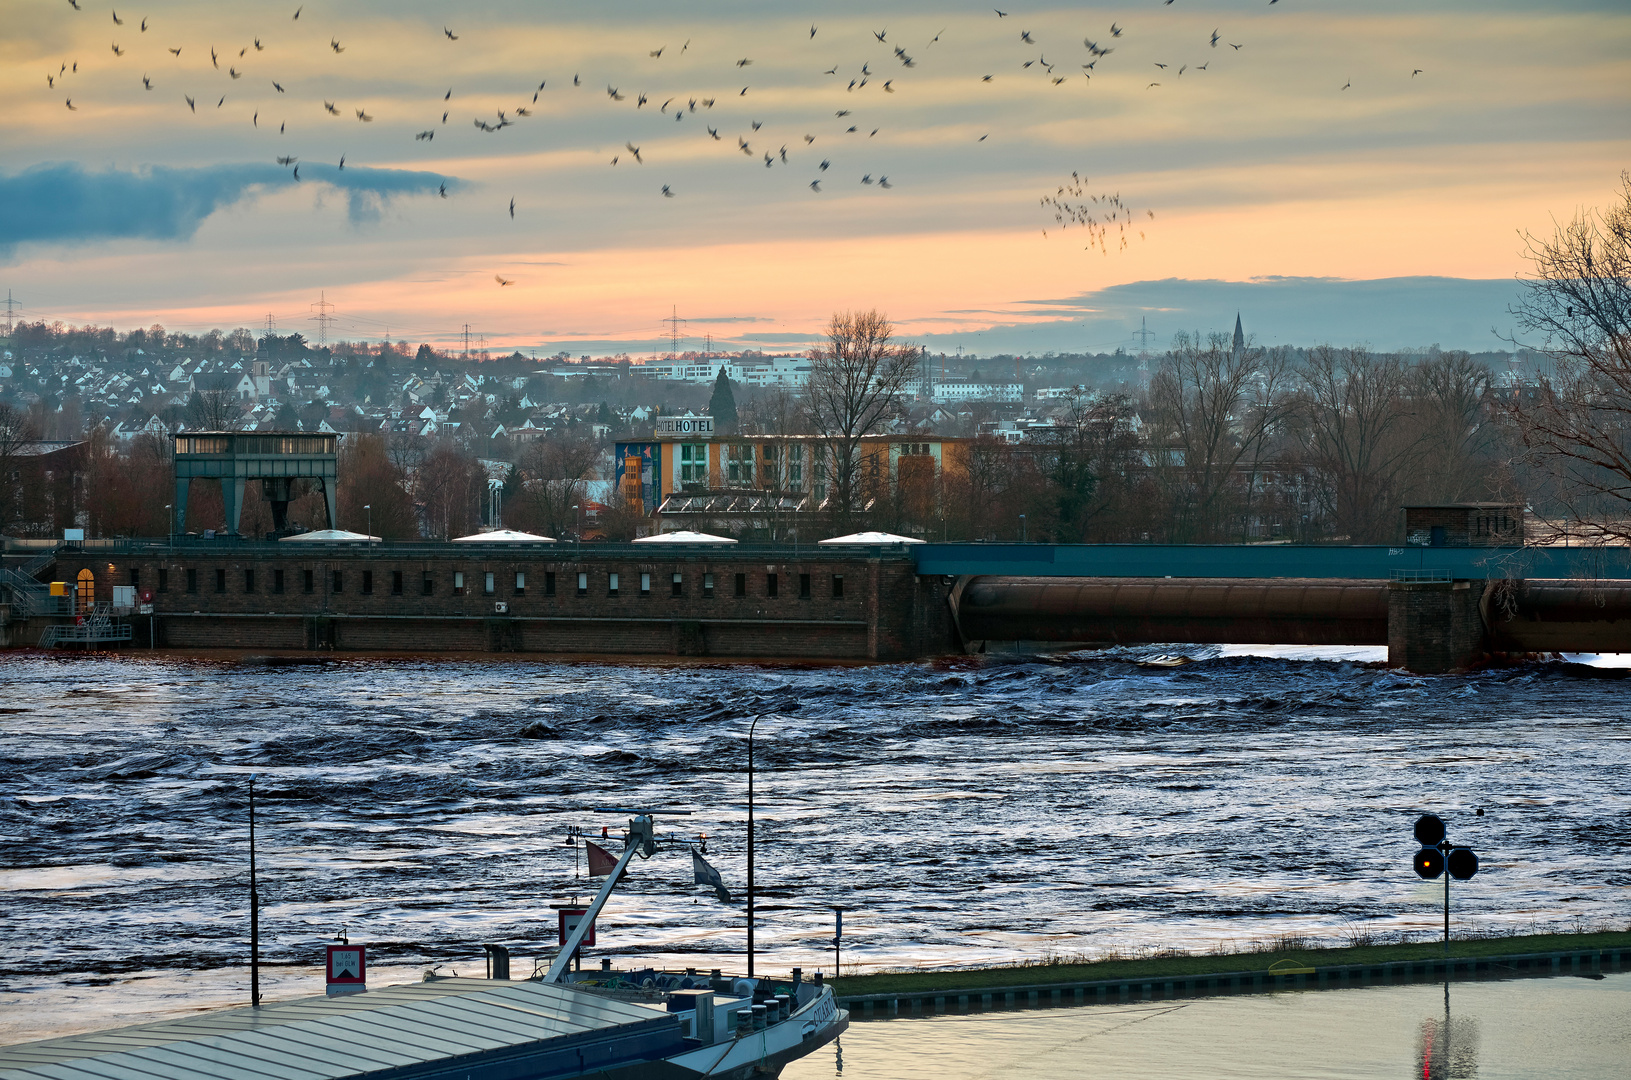 Letztes Wehr der Mosel in Koblenz, Hochwasser am 05. Feb 2021